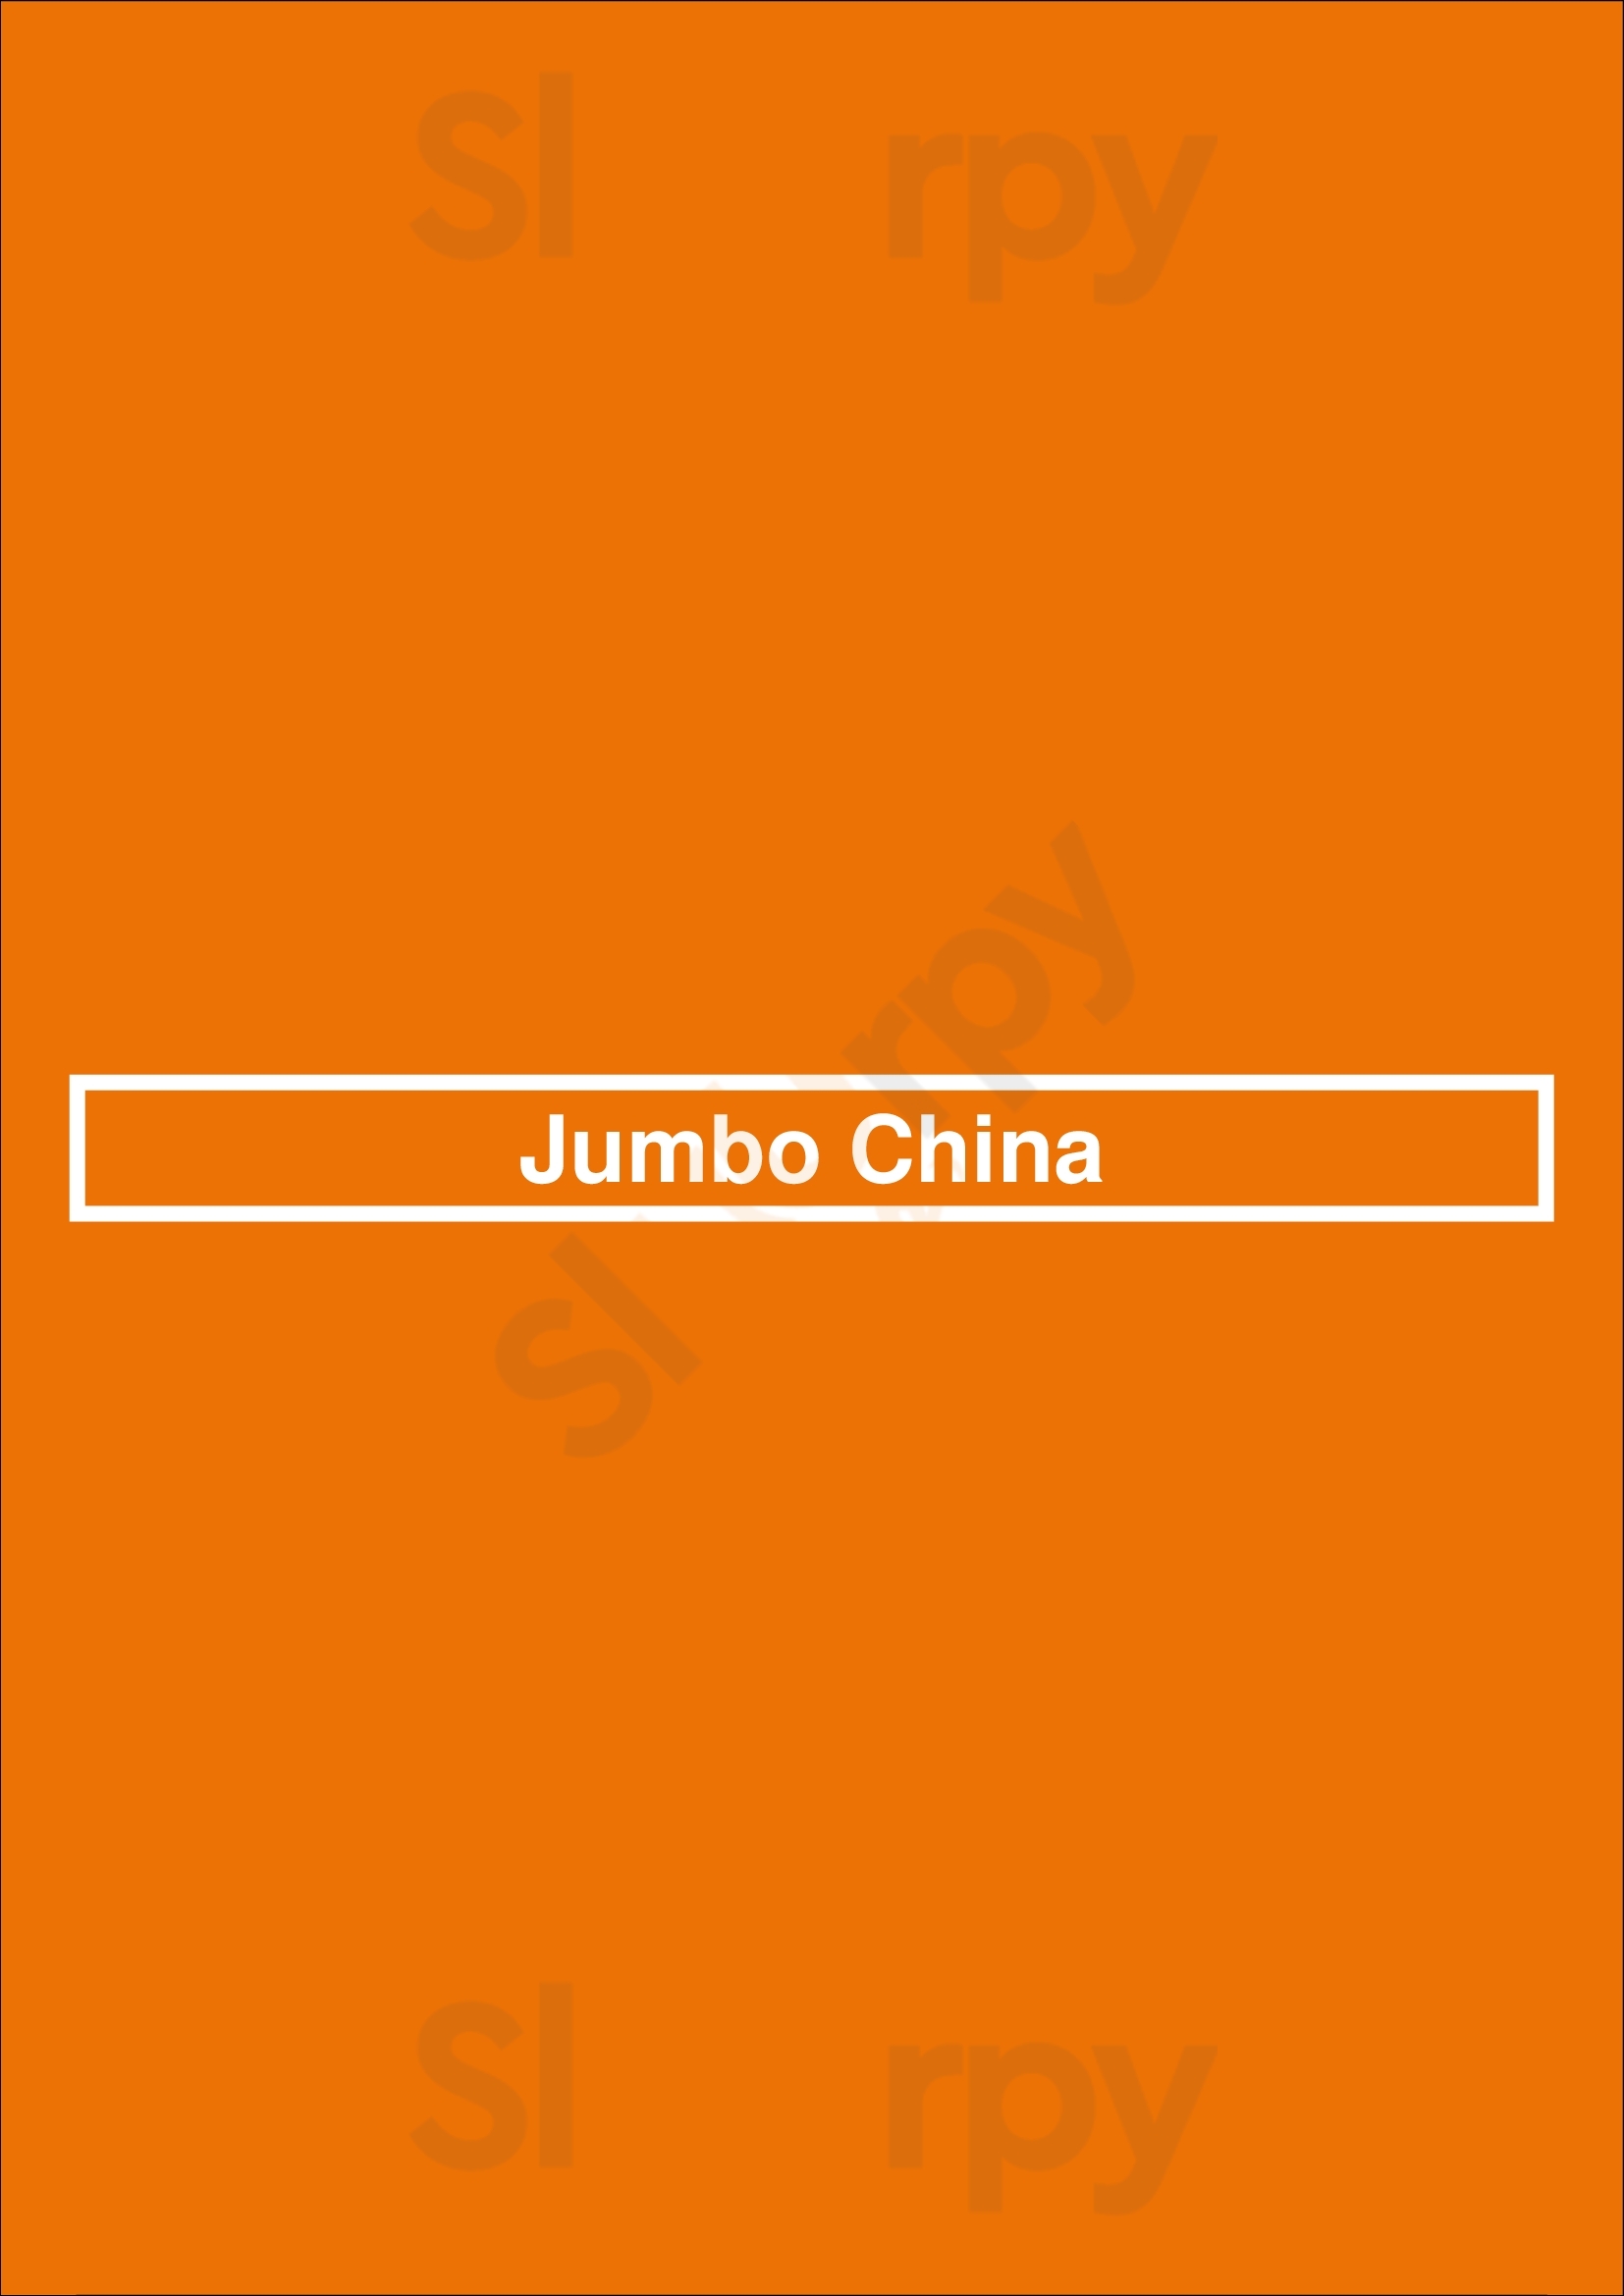 Jumbo China Raleigh Menu - 1